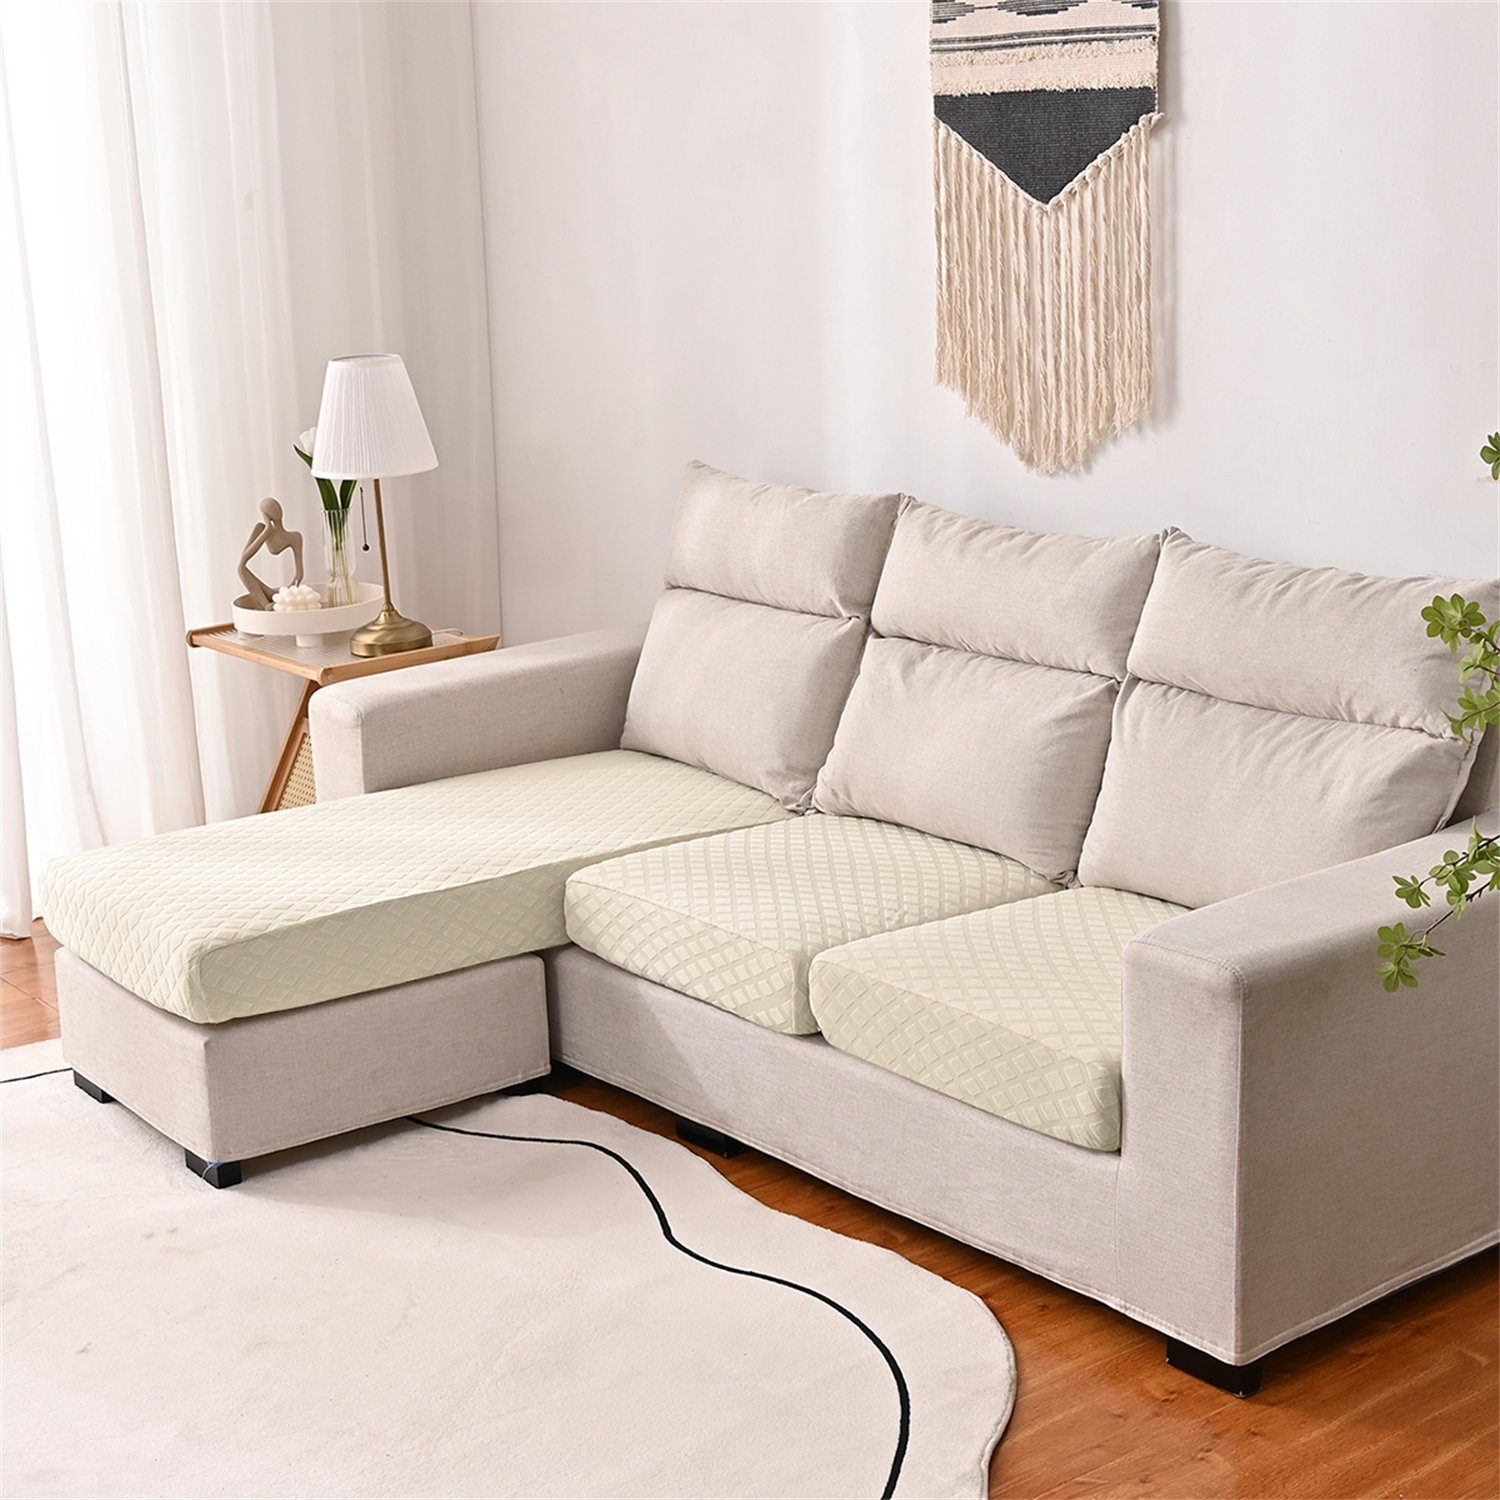 HOMEIDEAS, 3DMuster Sofa-Sitzbezug wasserfest elastischer Beige Sofahusse, mit